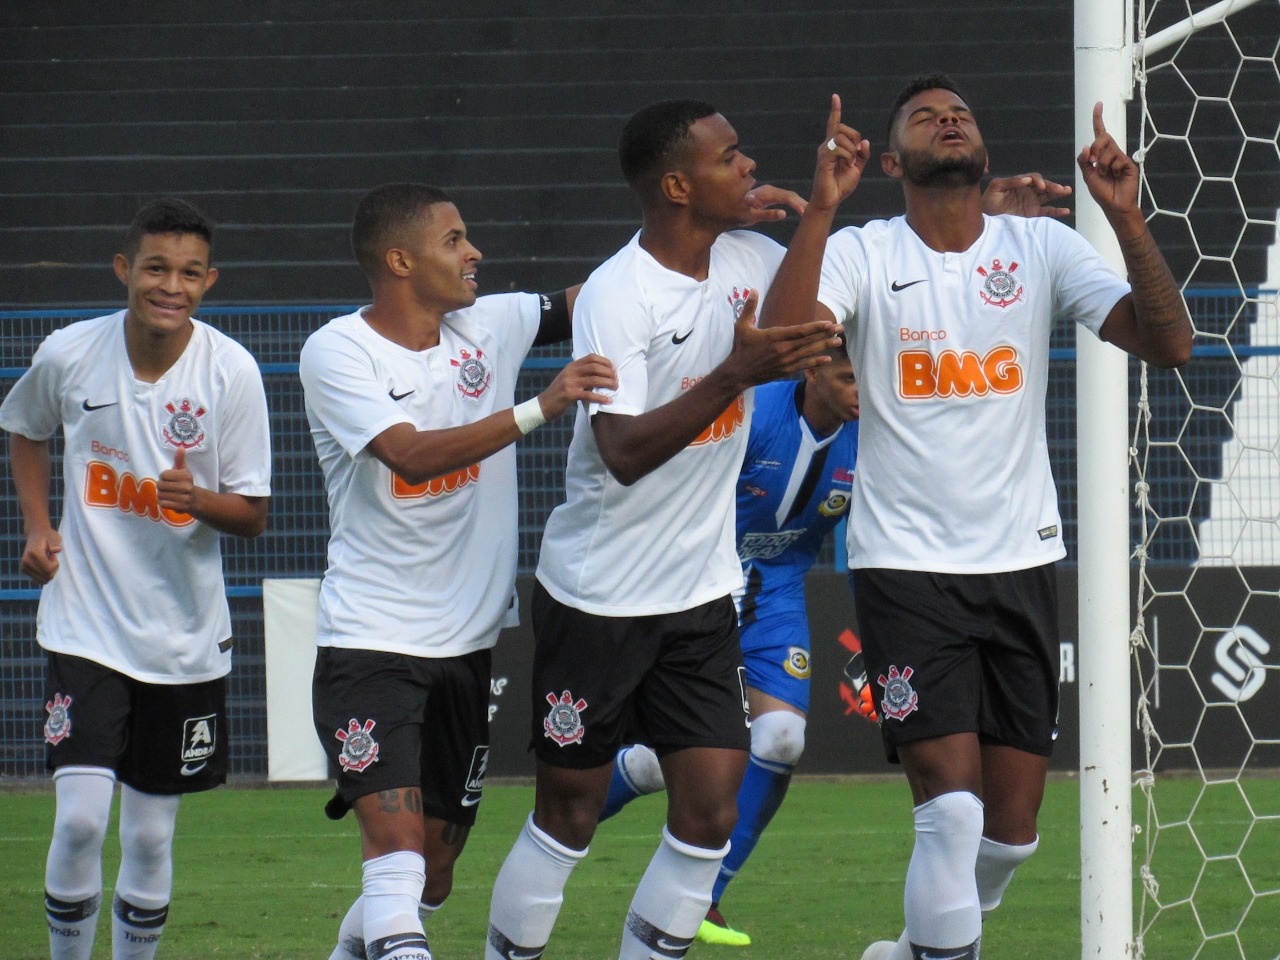 File:Nicolas Bernardo - Campeonato Paulista Sub20- São Caetano 2 x